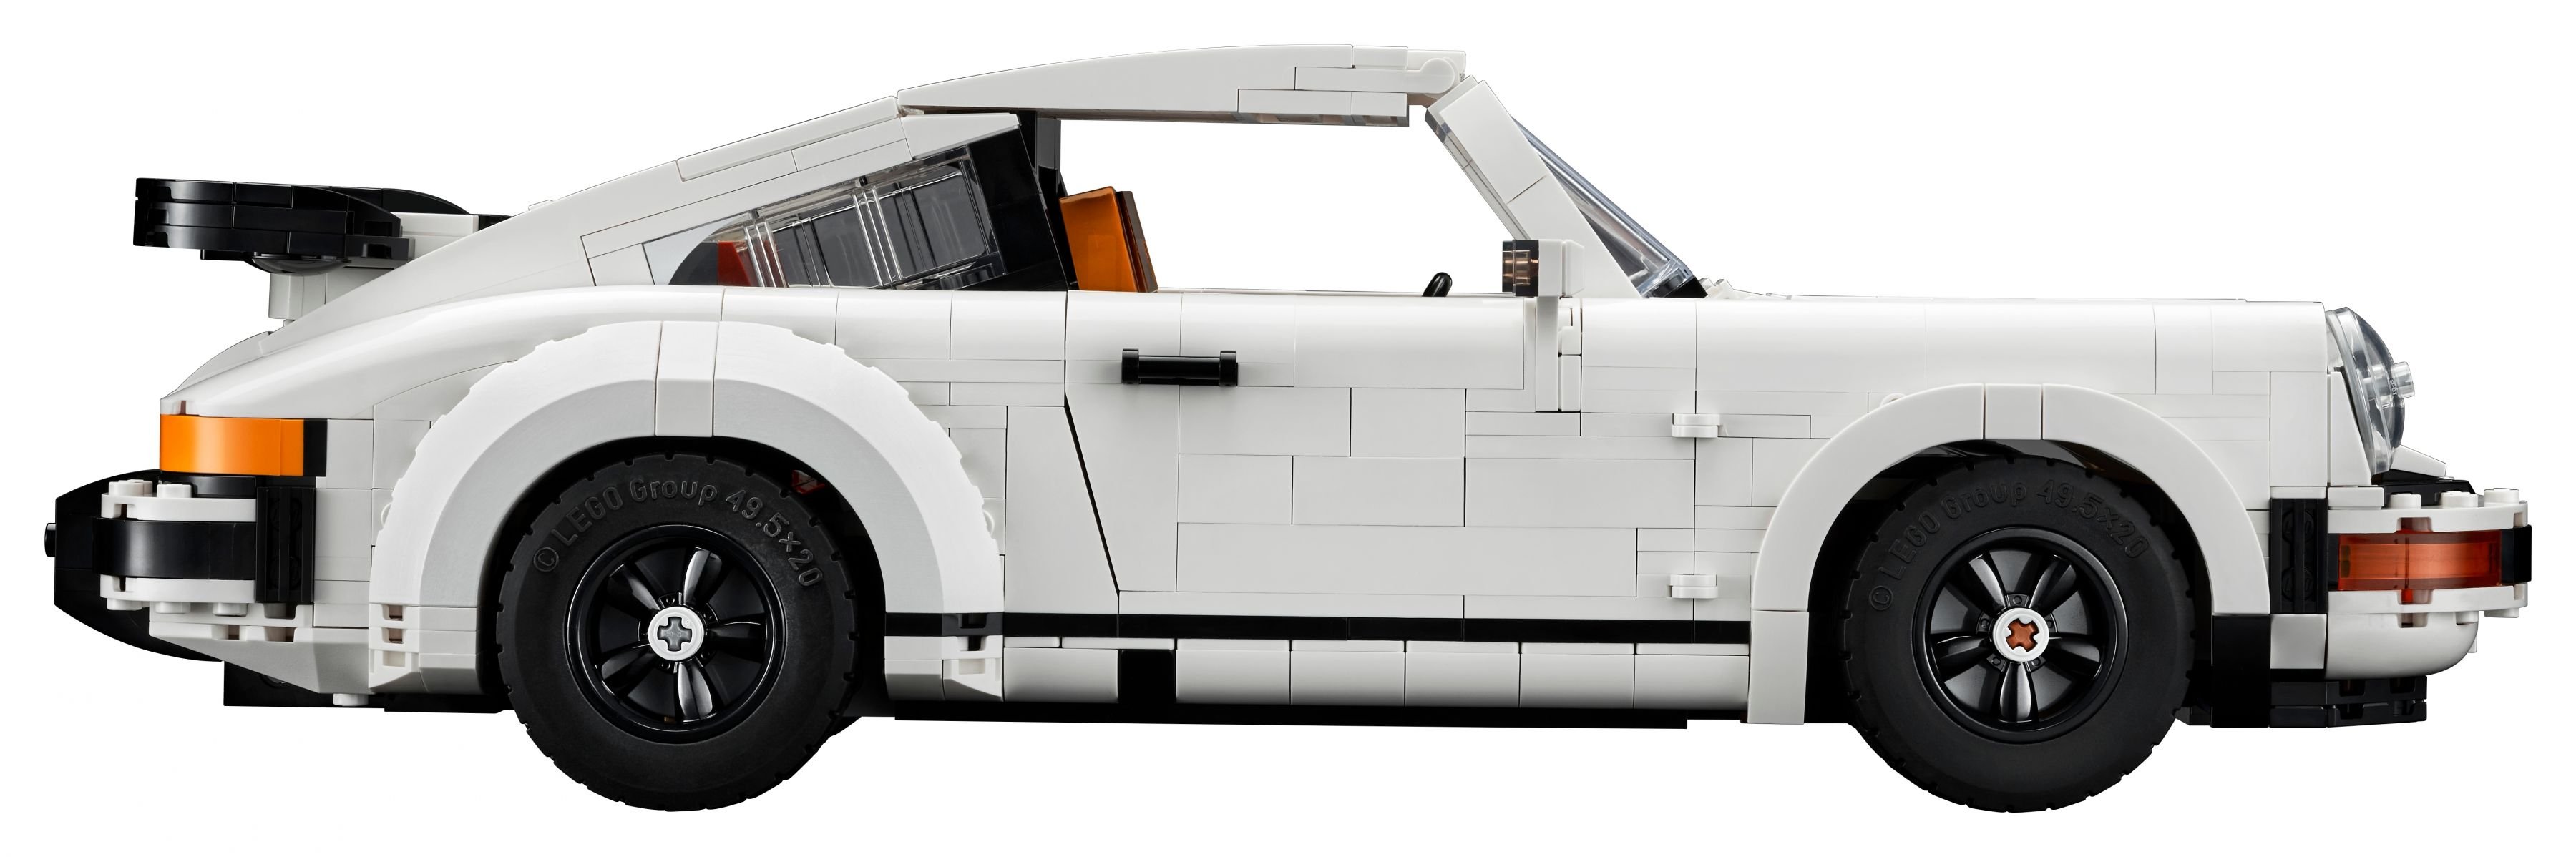 LEGO Advanced Models 10295 Porsche 911 LEGO_10295_alt9.jpg